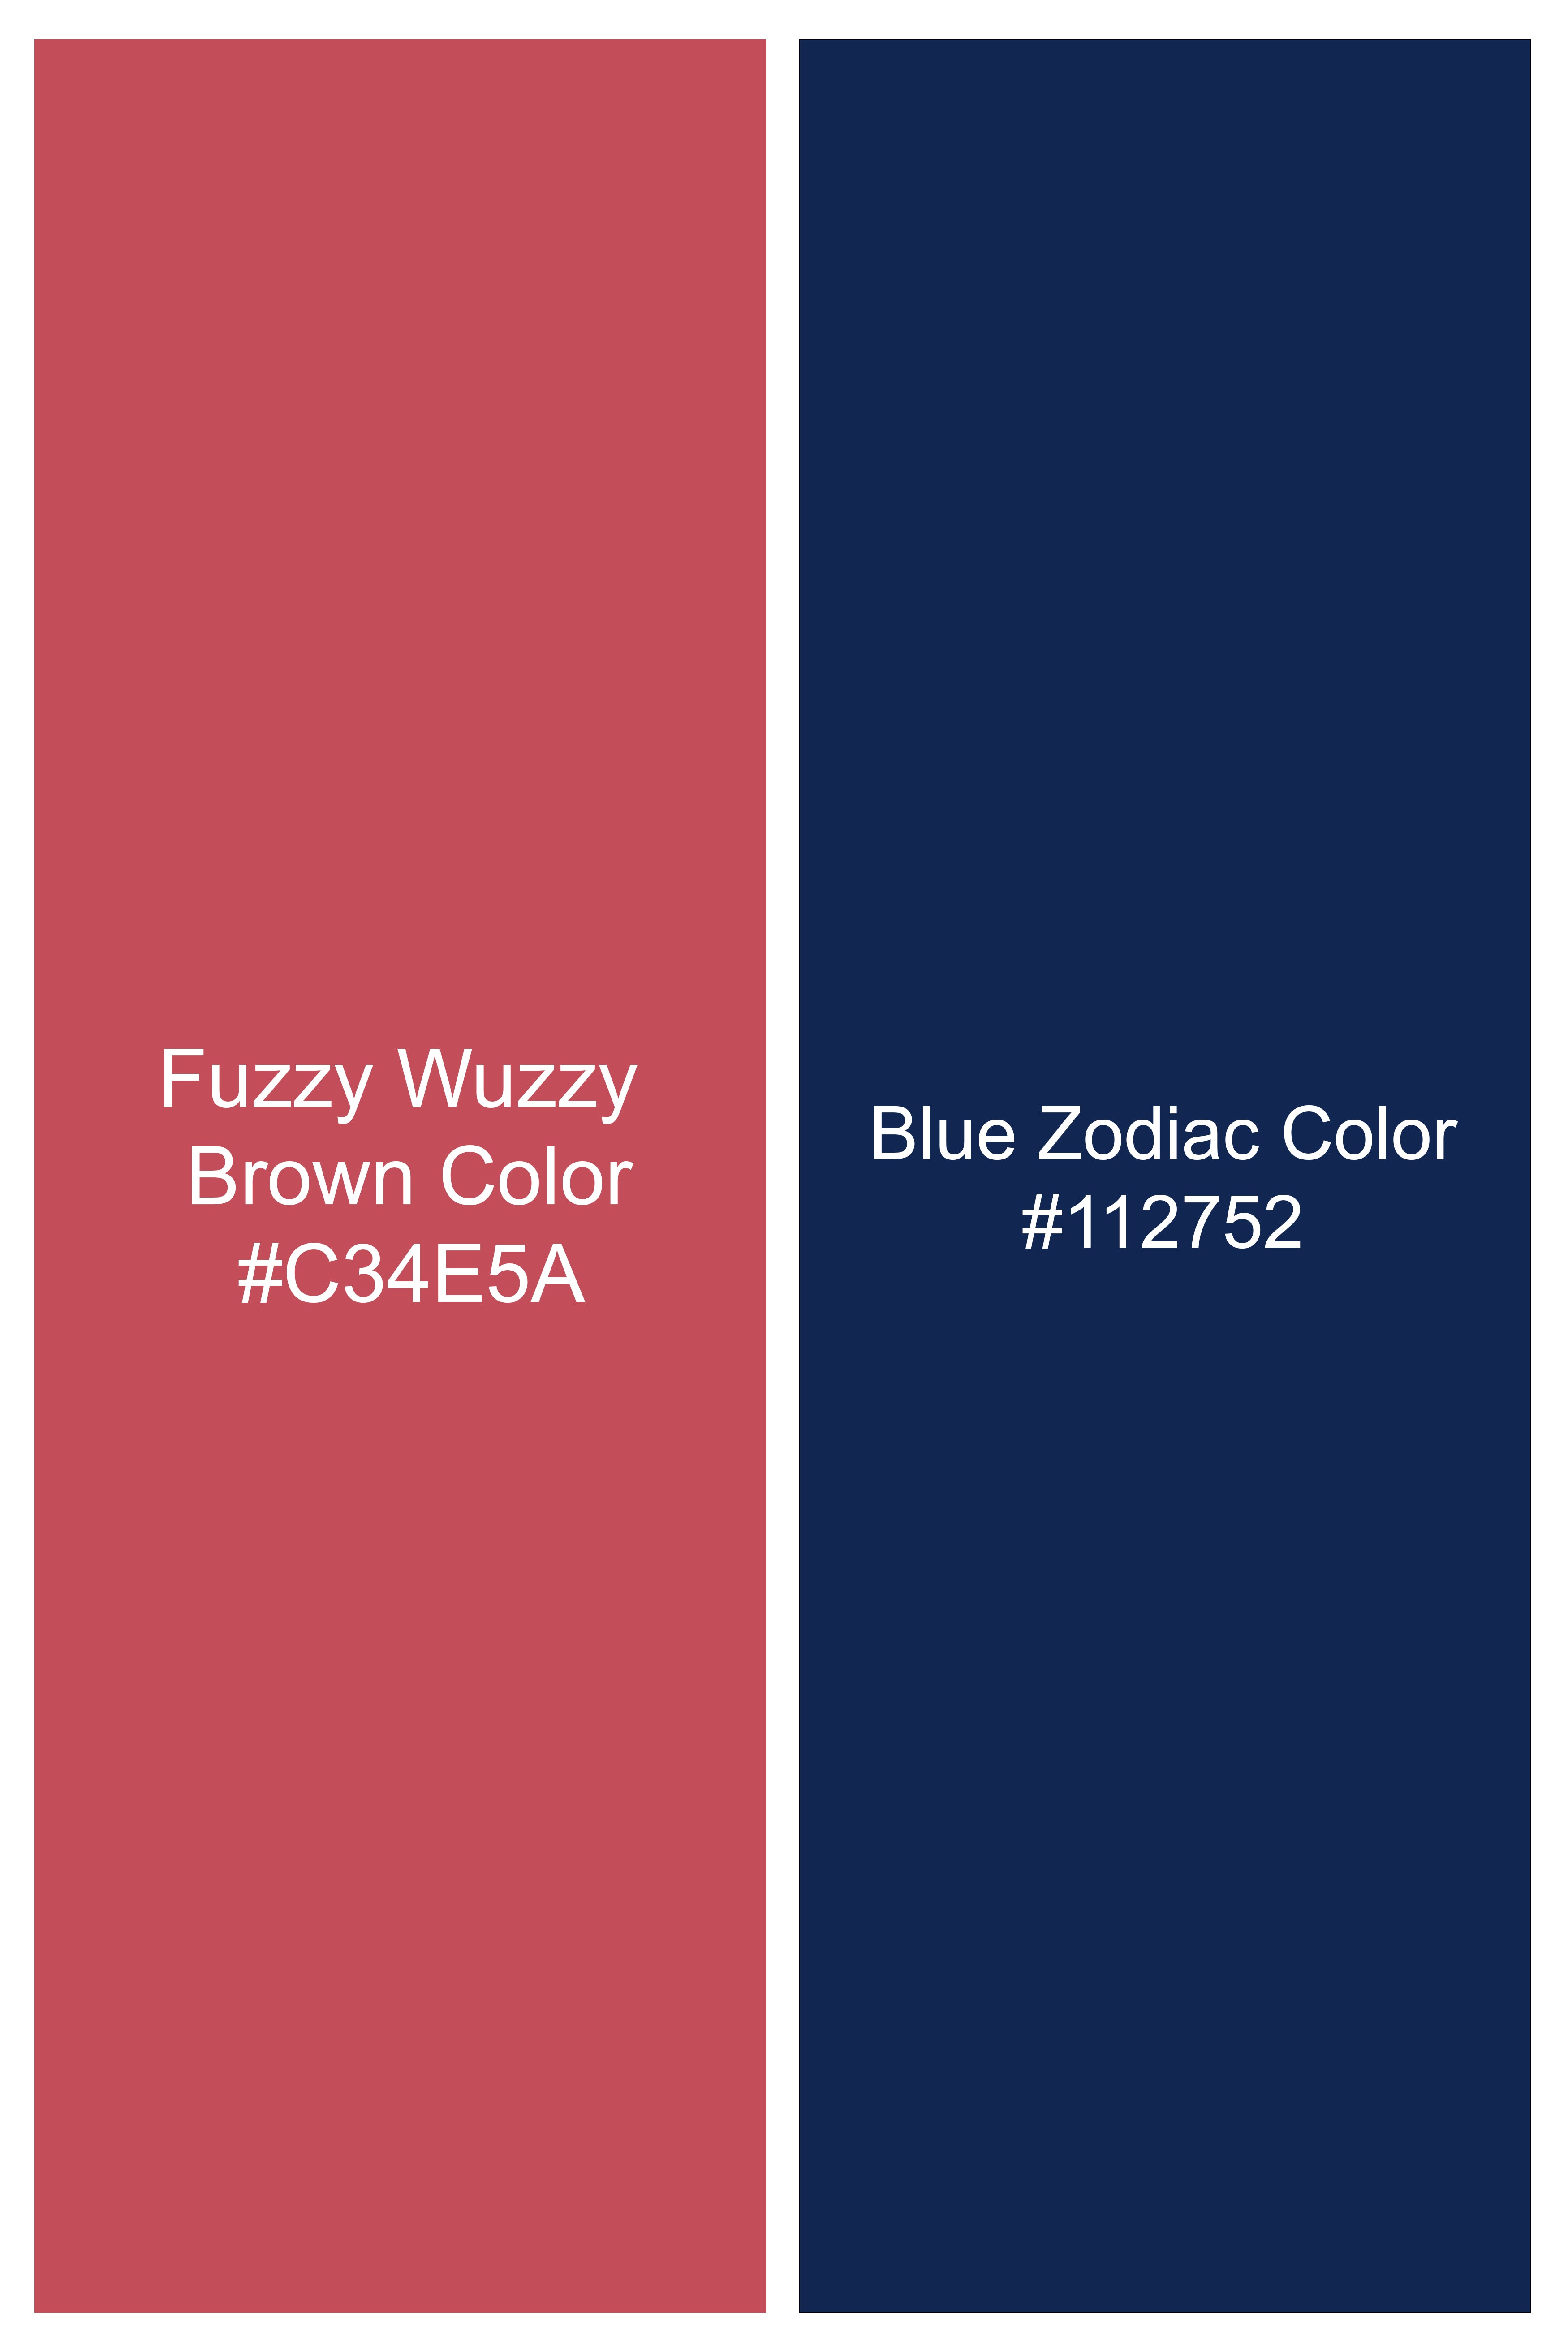 Fuzzy Wuzzy Red with Zodiac Blue Plaid Flannel Shirt